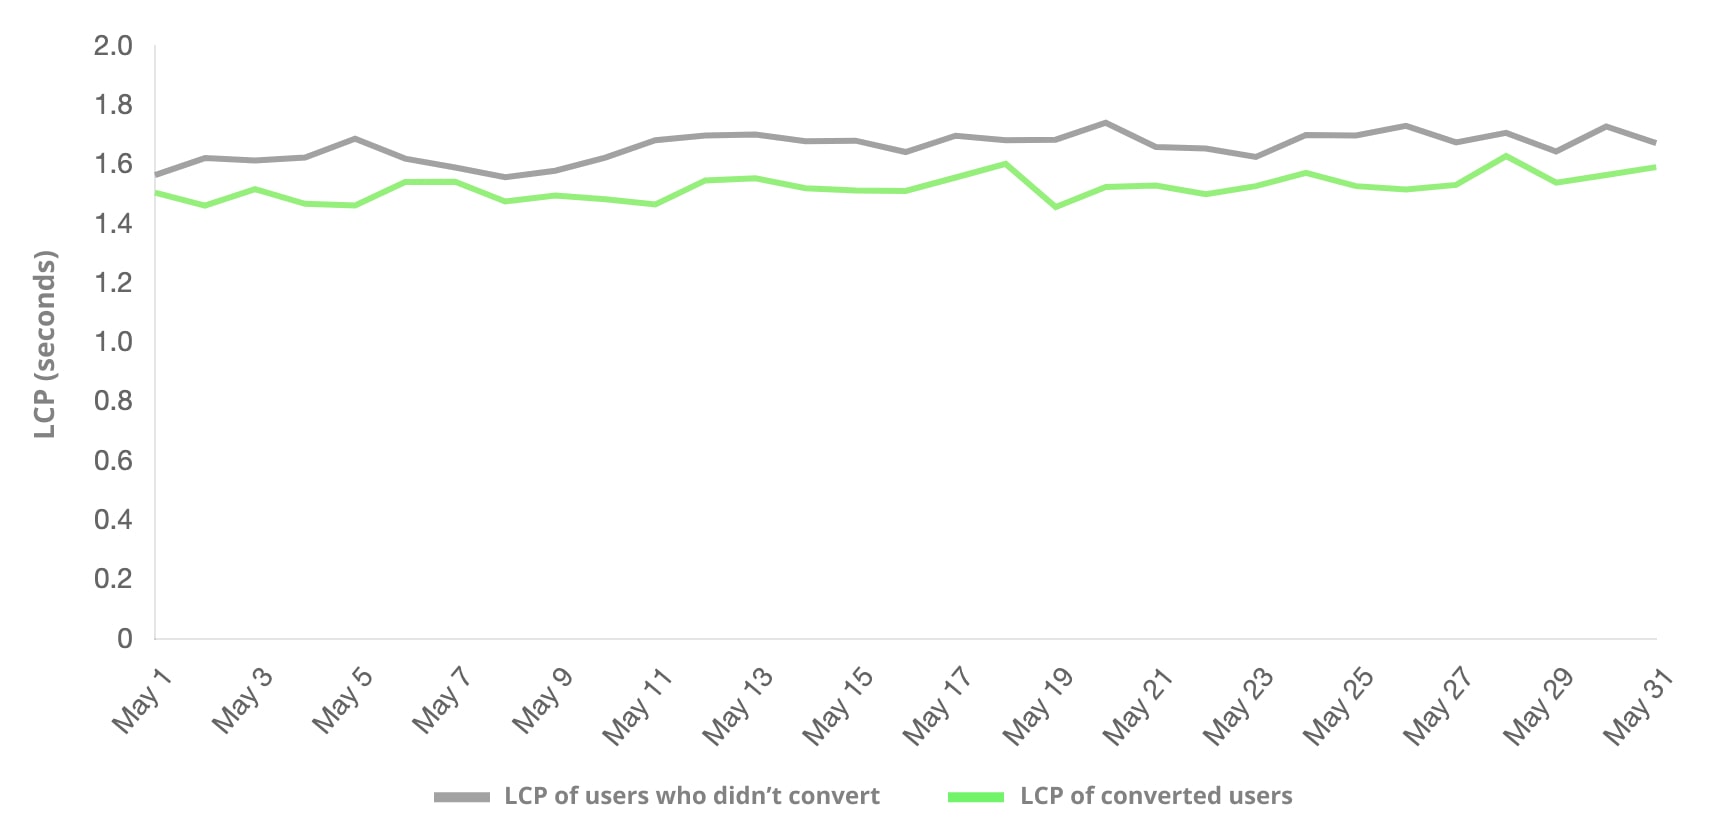 Uma comparação entre os usuários que fizeram e os que não fizeram por LCP. O grupo de usuários que realizou conversões com mais frequência teve uma LCP menor.